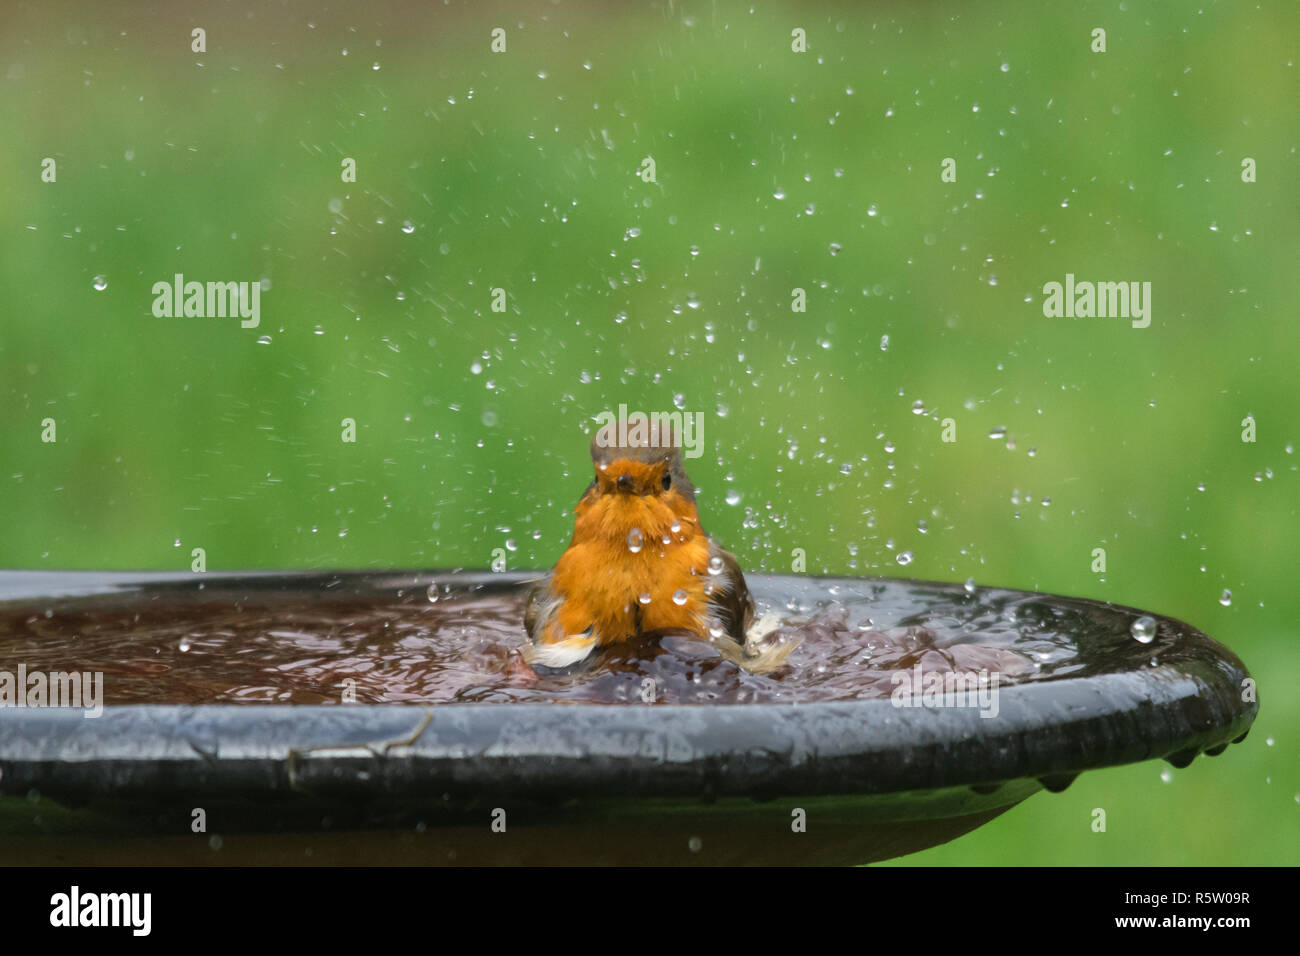 Robin (Erithacus Rubecula), kleiner Vogel in einer Badewanne, Garten Tiere, tierische Humor, Humor Stockfoto